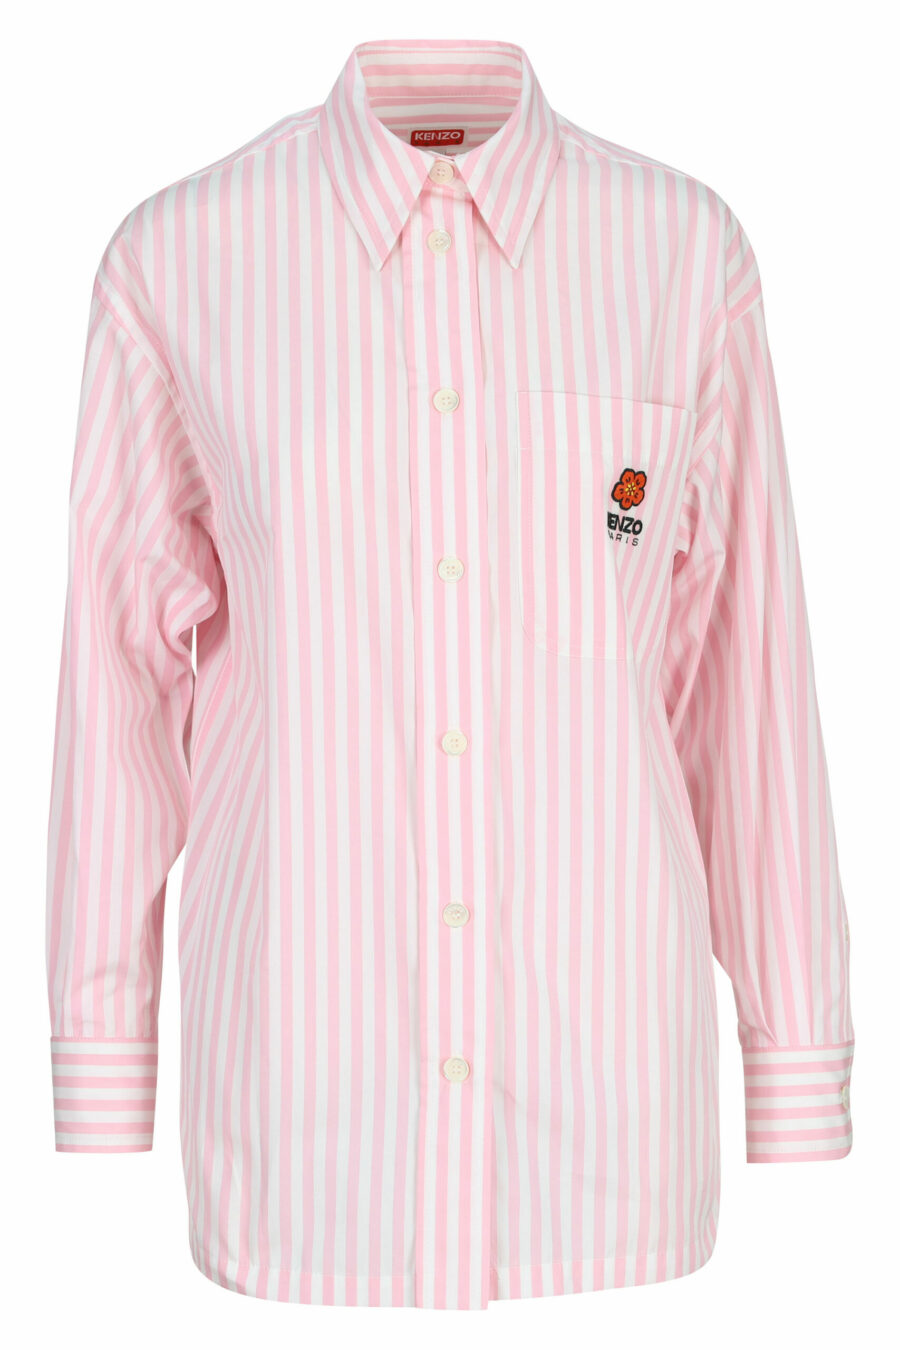 Rosa Oversize-Shirt mit Mini-Logo "boke flower" - 3612230589674 skaliert